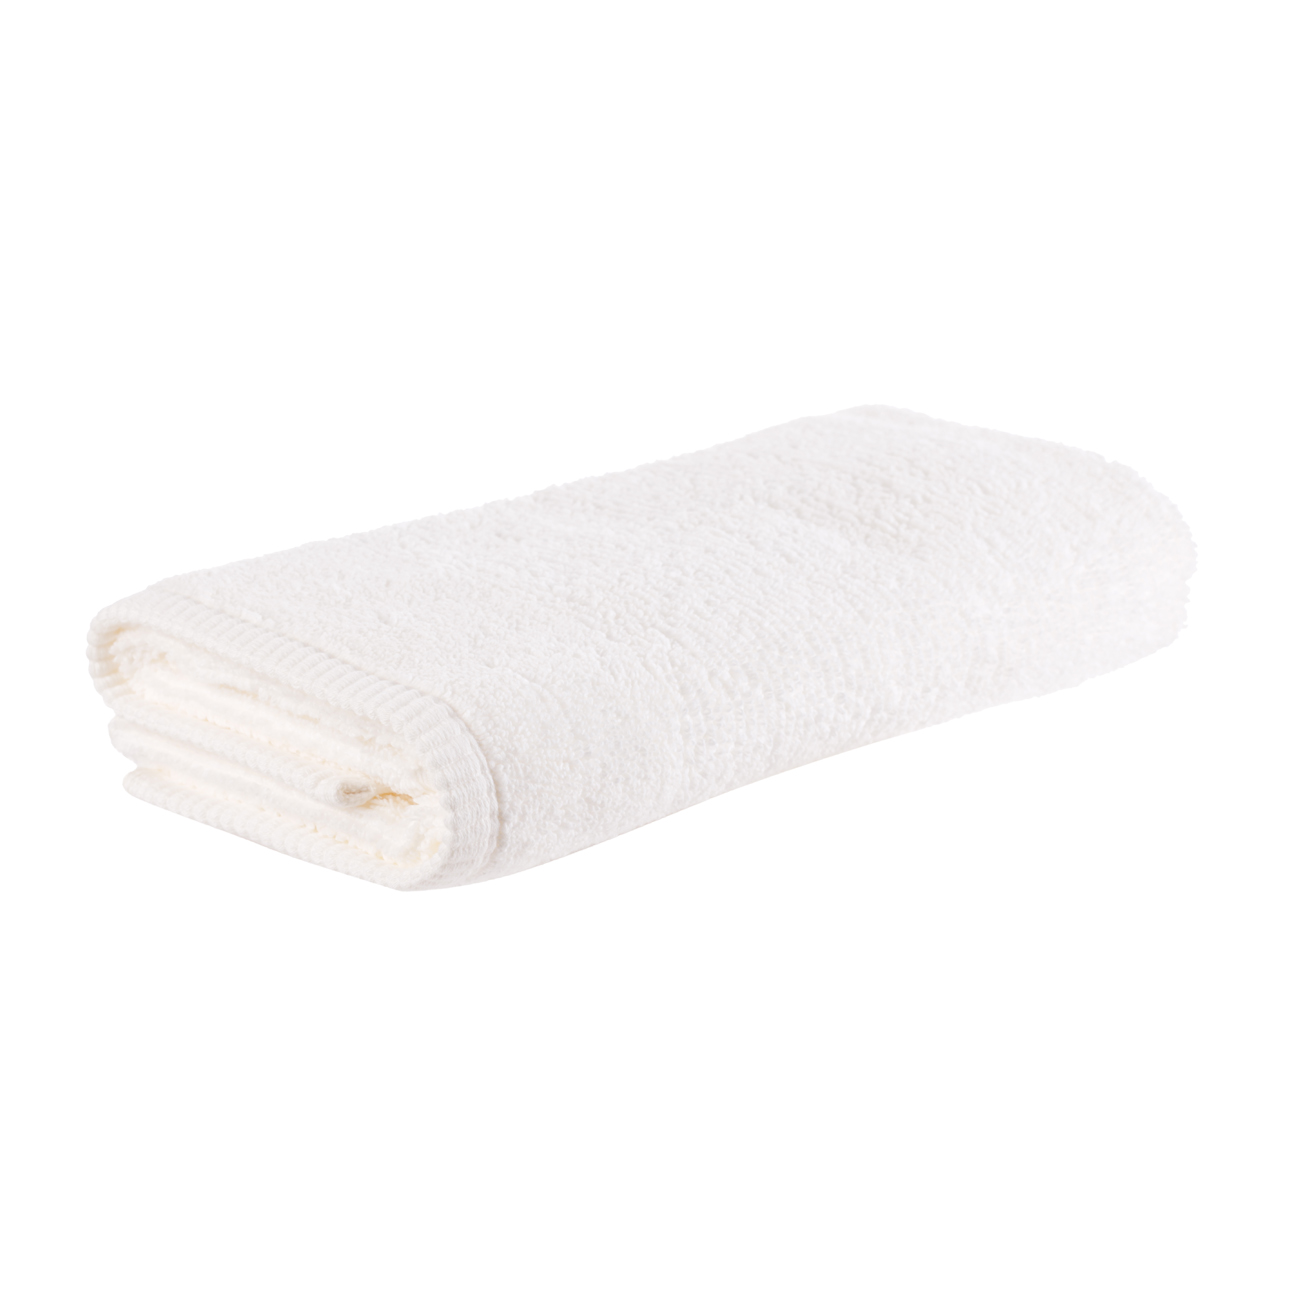 Towel, 50x90 cm, cotton, white, Terry cotton изображение № 3